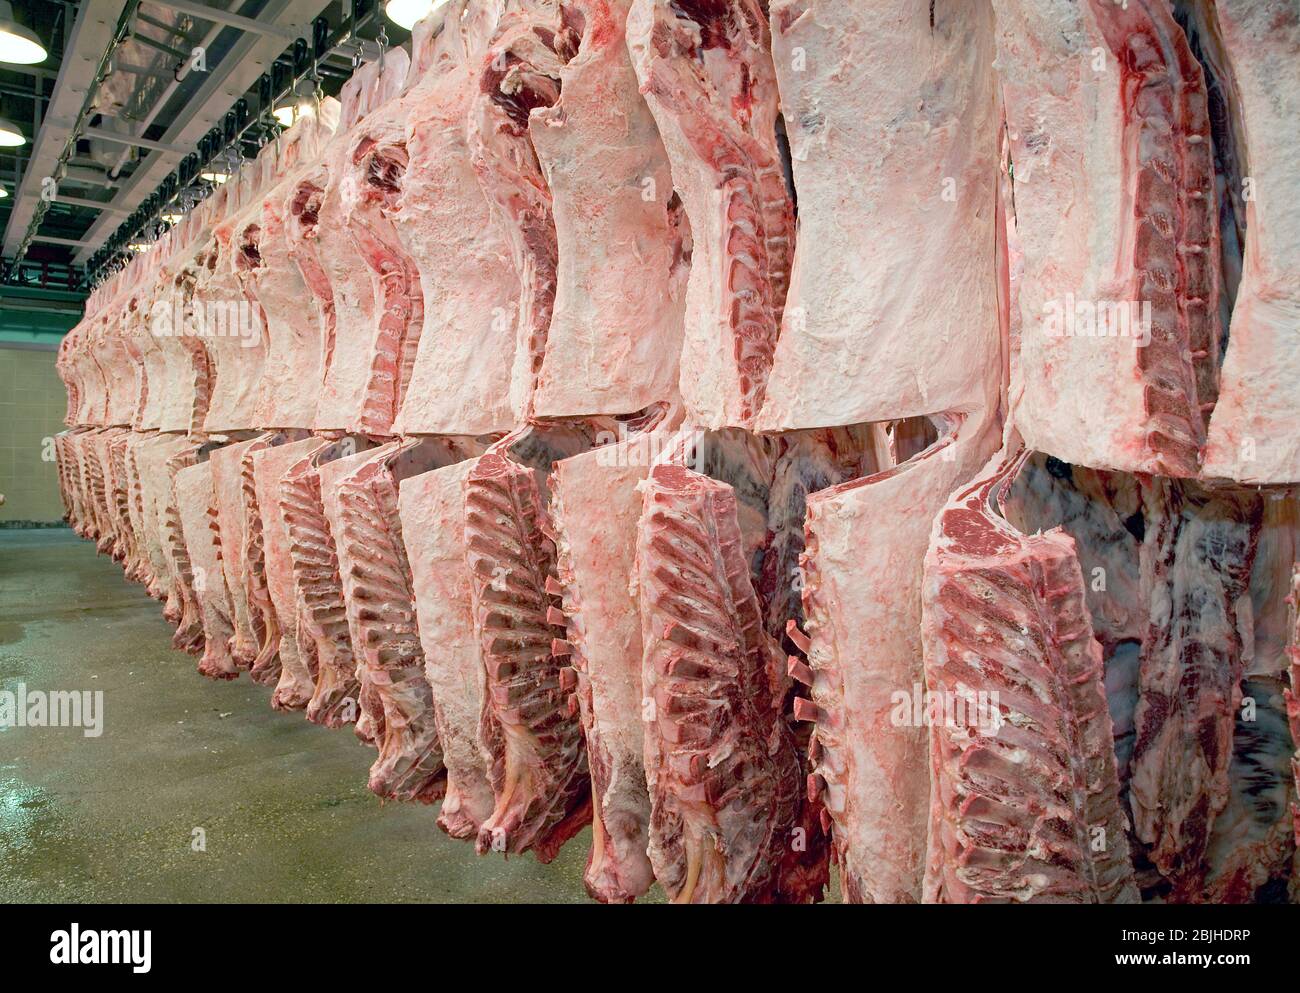 Carcasse di carni bovine fresche macellate appese in un frigorifero dell'impianto di trasformazione delle carni. L'occhio del lombo è esposto per determinare la qualità. Foto Stock